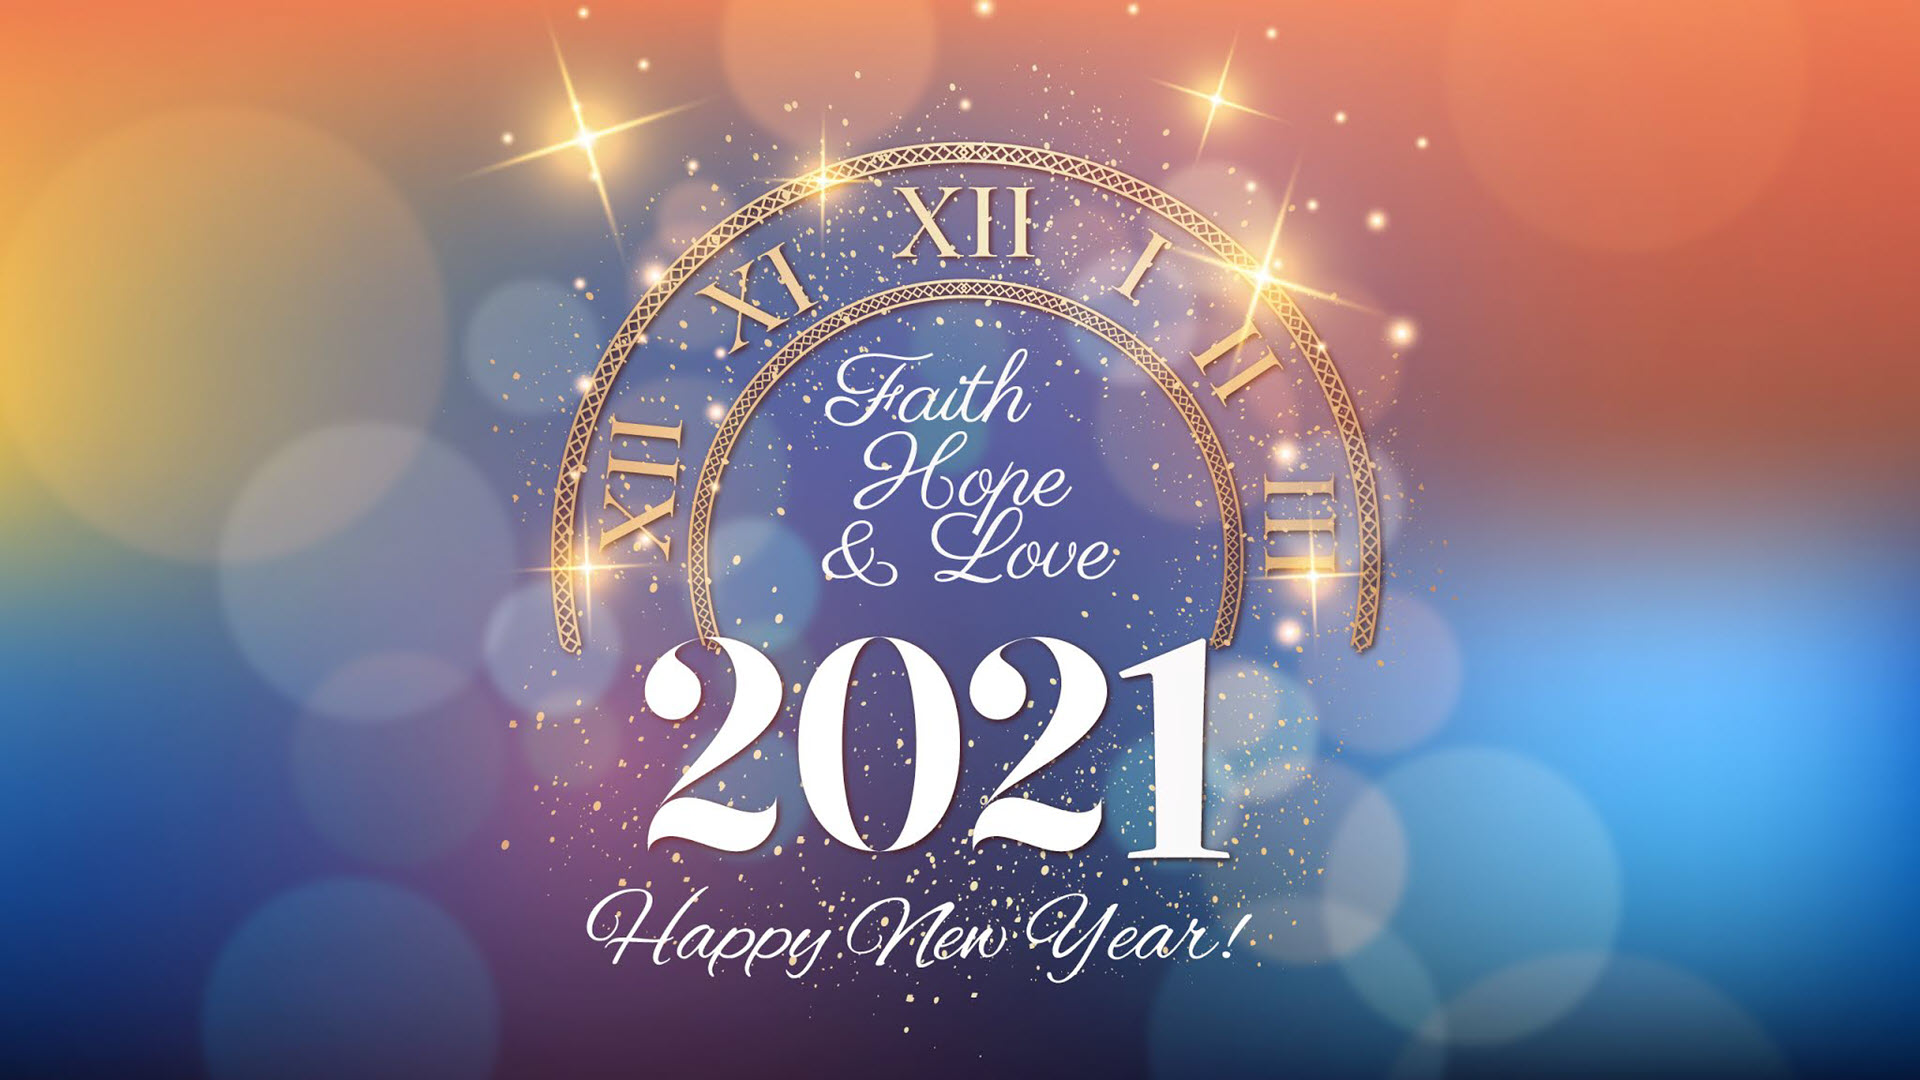 Hình nền chúc mừng năm mới 2021 độc đáo